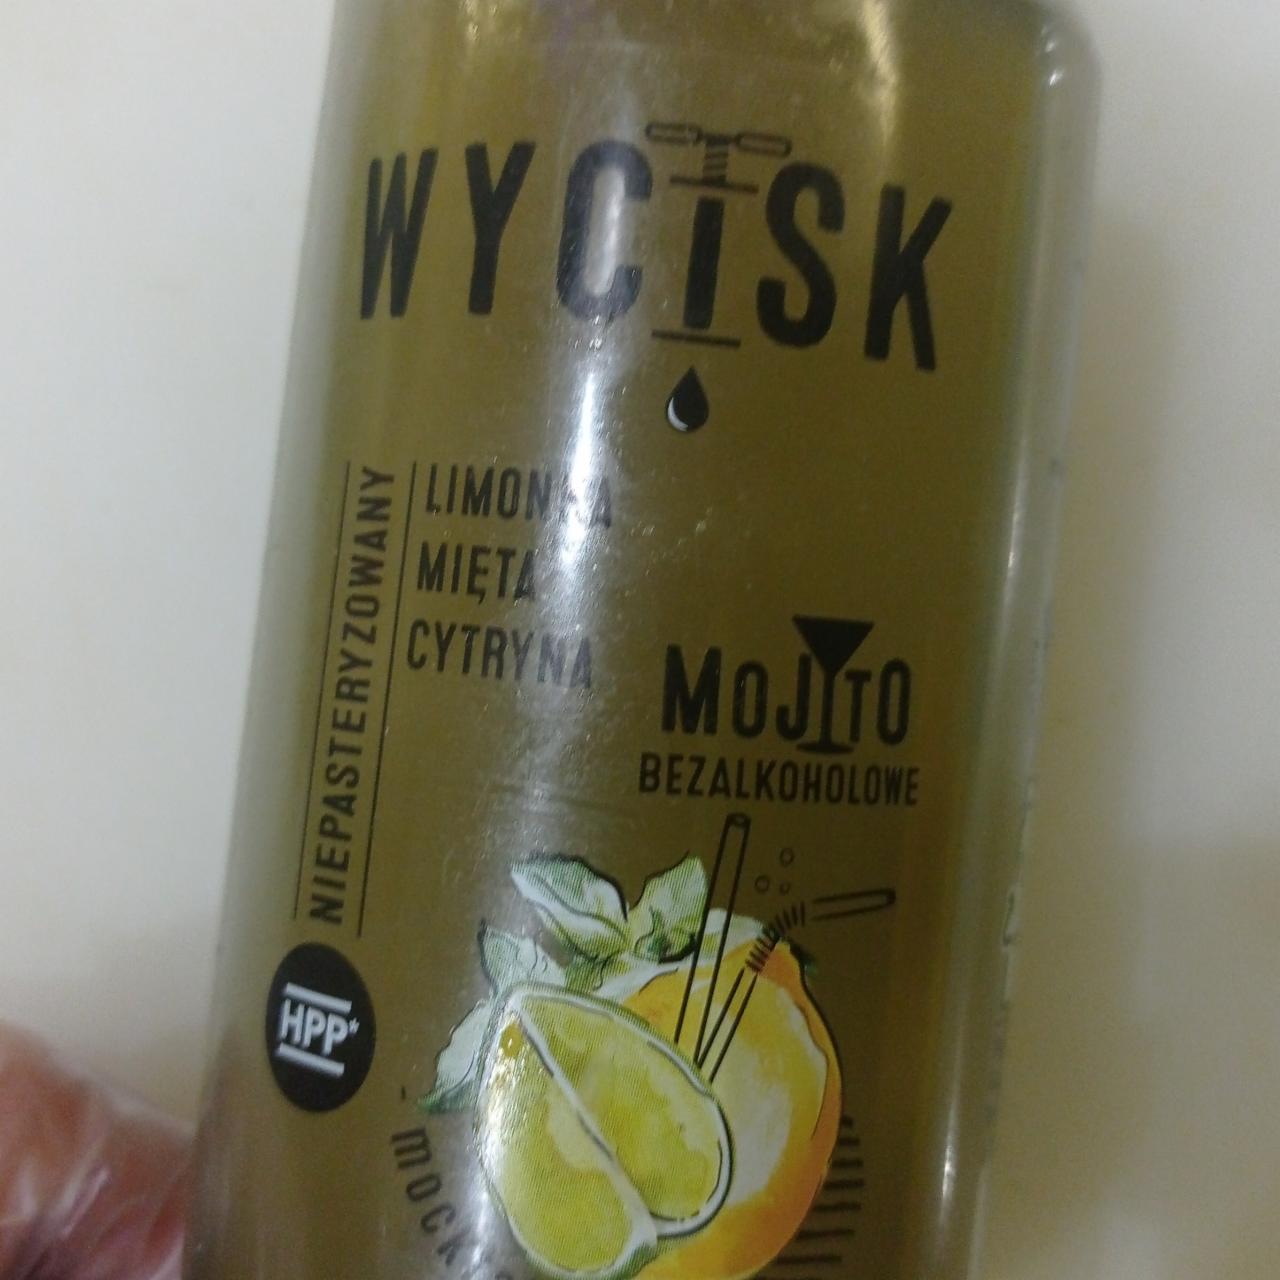 Zdjęcia - WYCISK limonka mięta cytryna Mojito bezalkoholowe